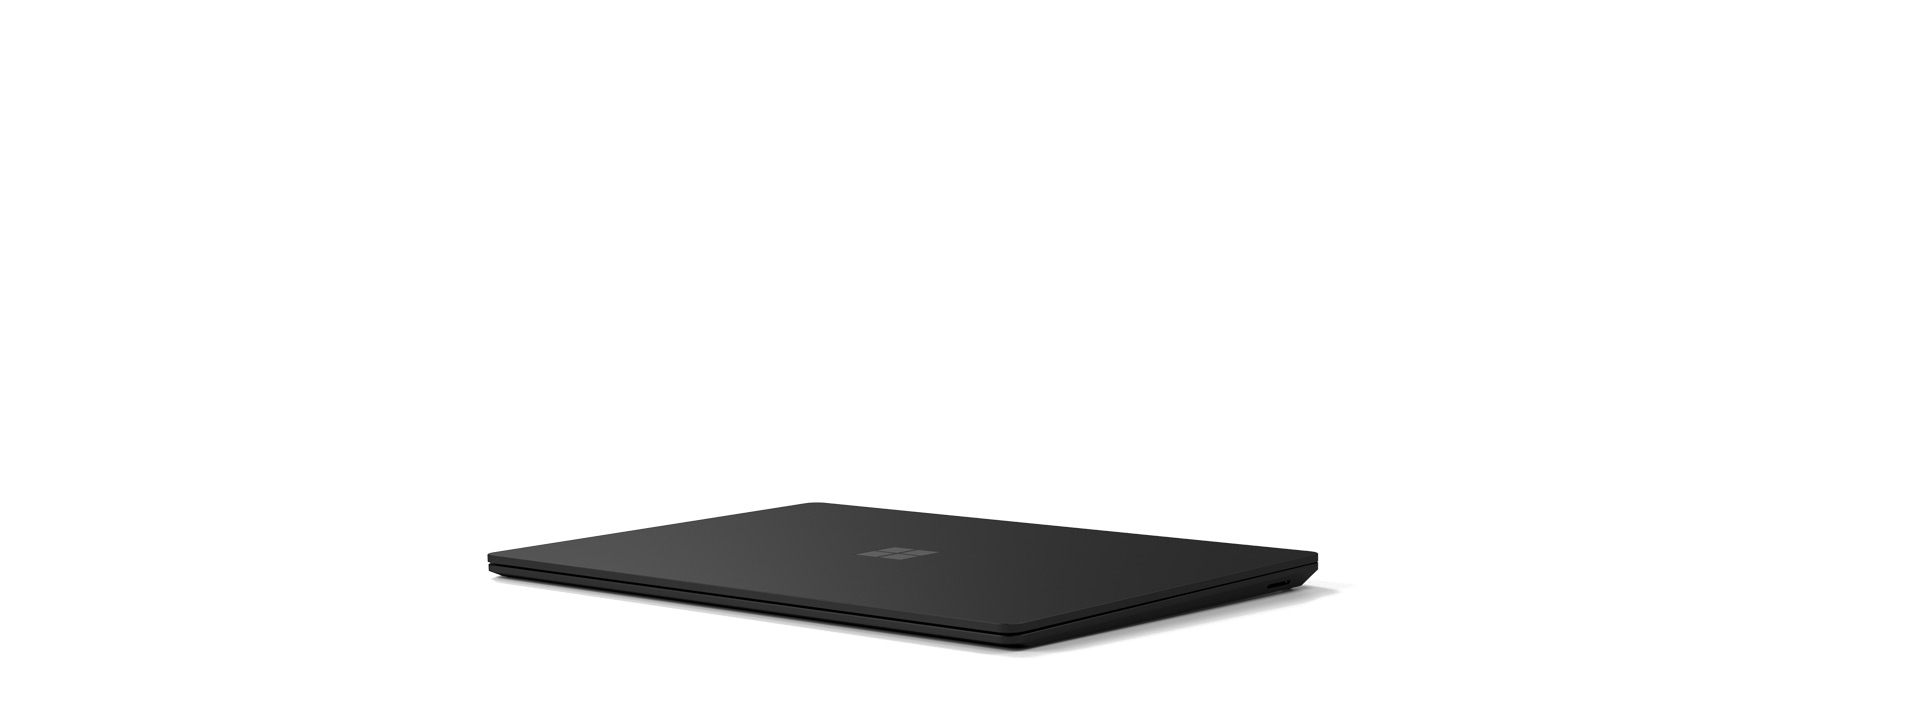 展示的 Surface Laptop 4 已闔上。